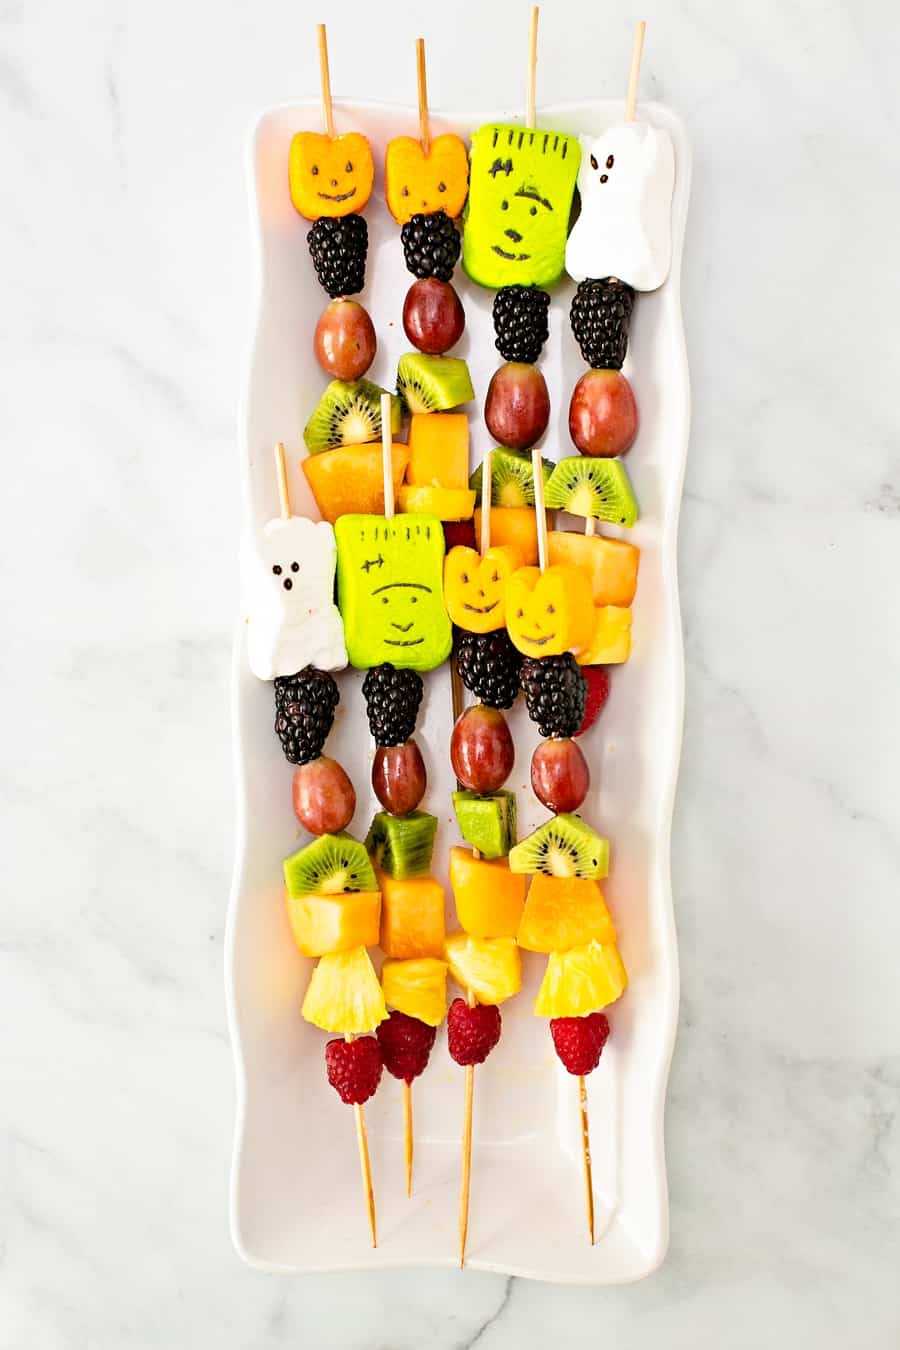 Halloween fruit skewers healthy kid snack or treat